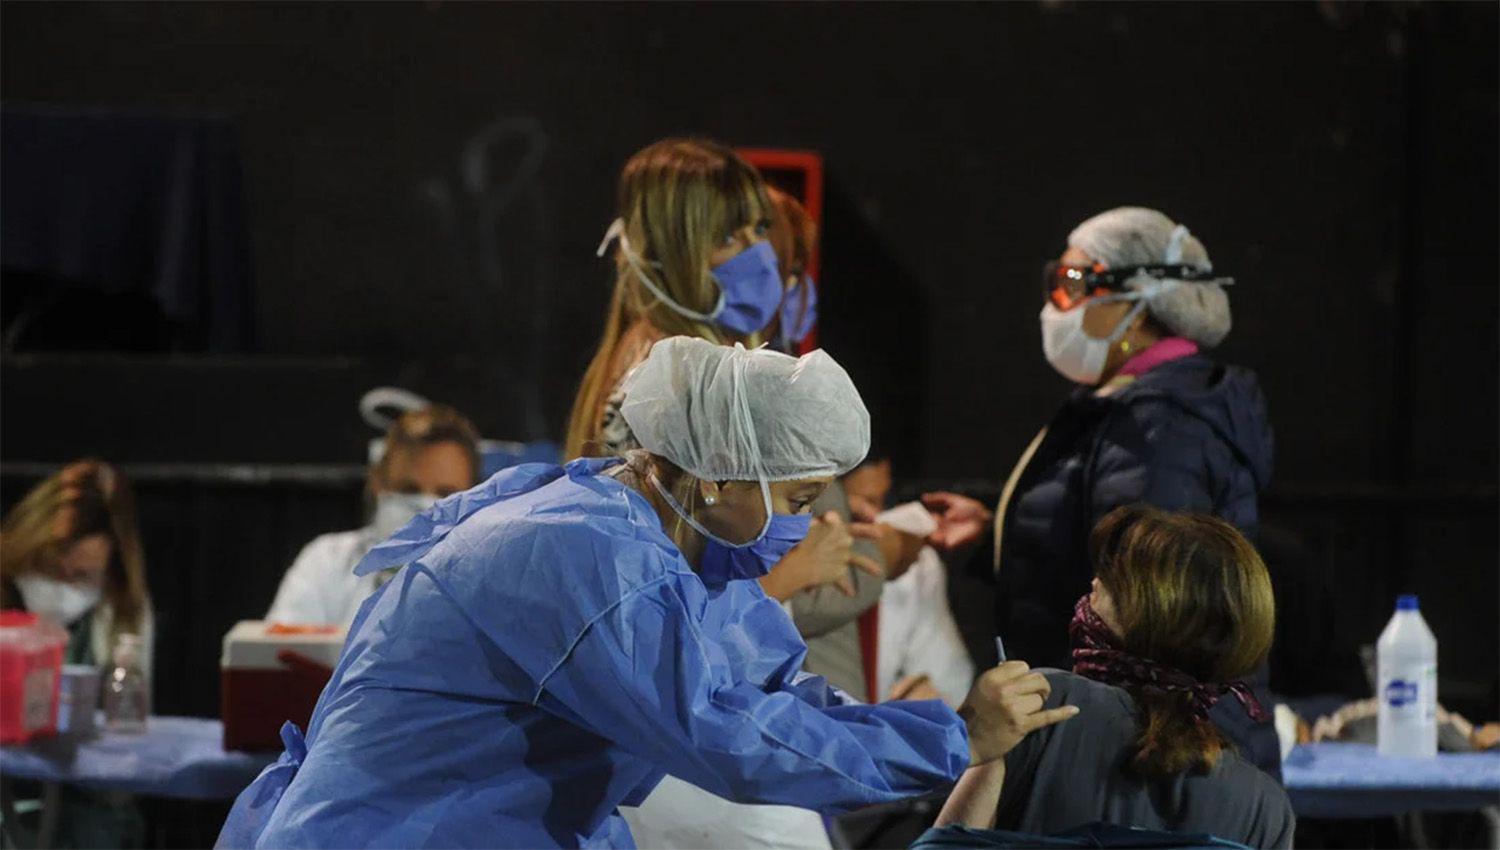 Argentina registra 151 viacutectimas fatales por coronavirus y 3144 casos en total